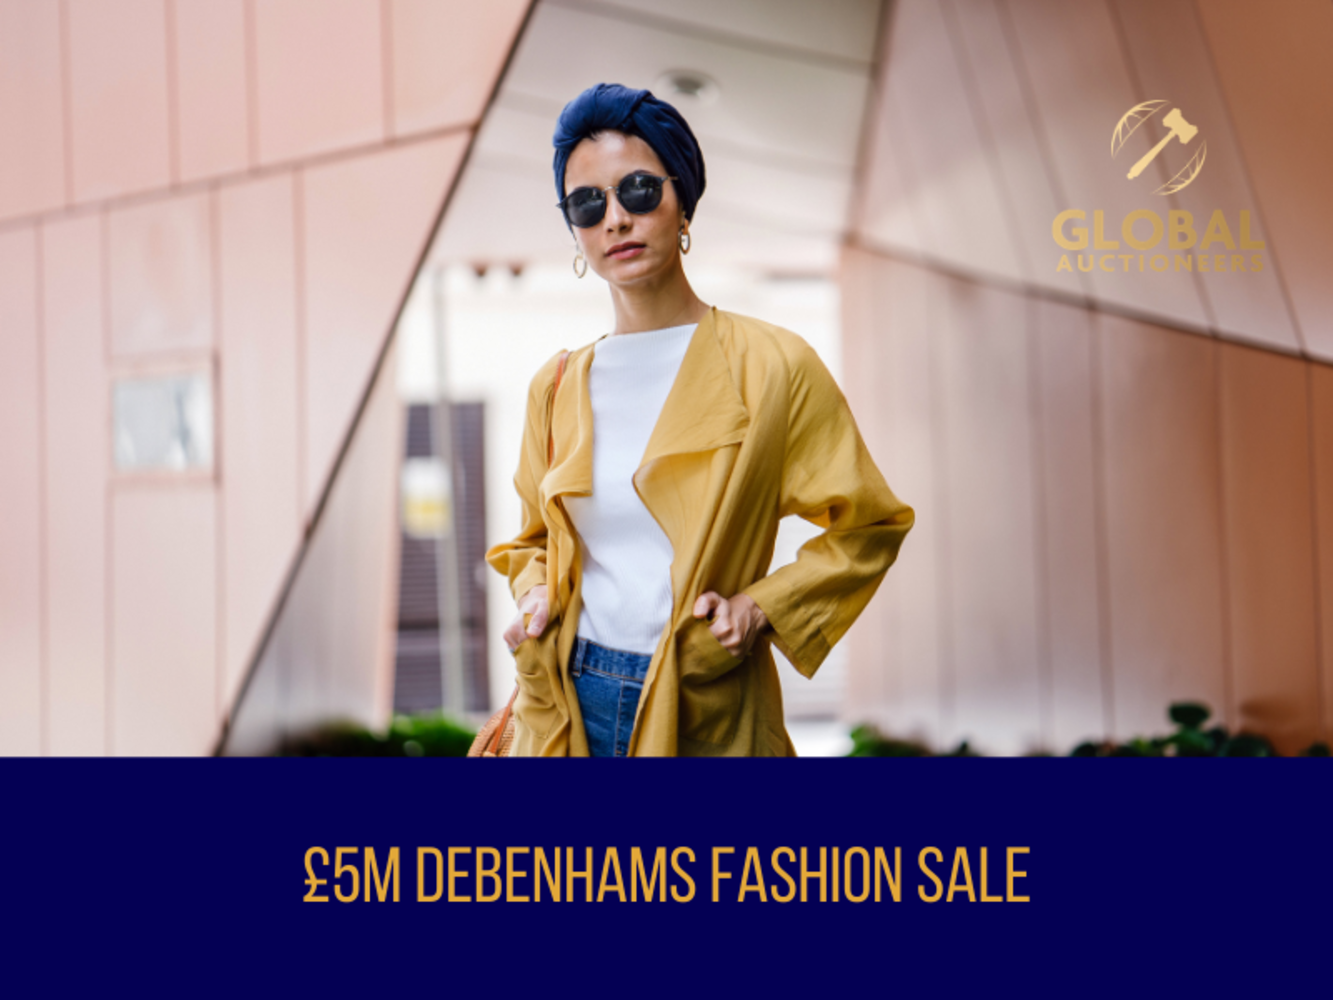 The £5m Debenhams Mega Fashion Sale - 30th April 2021